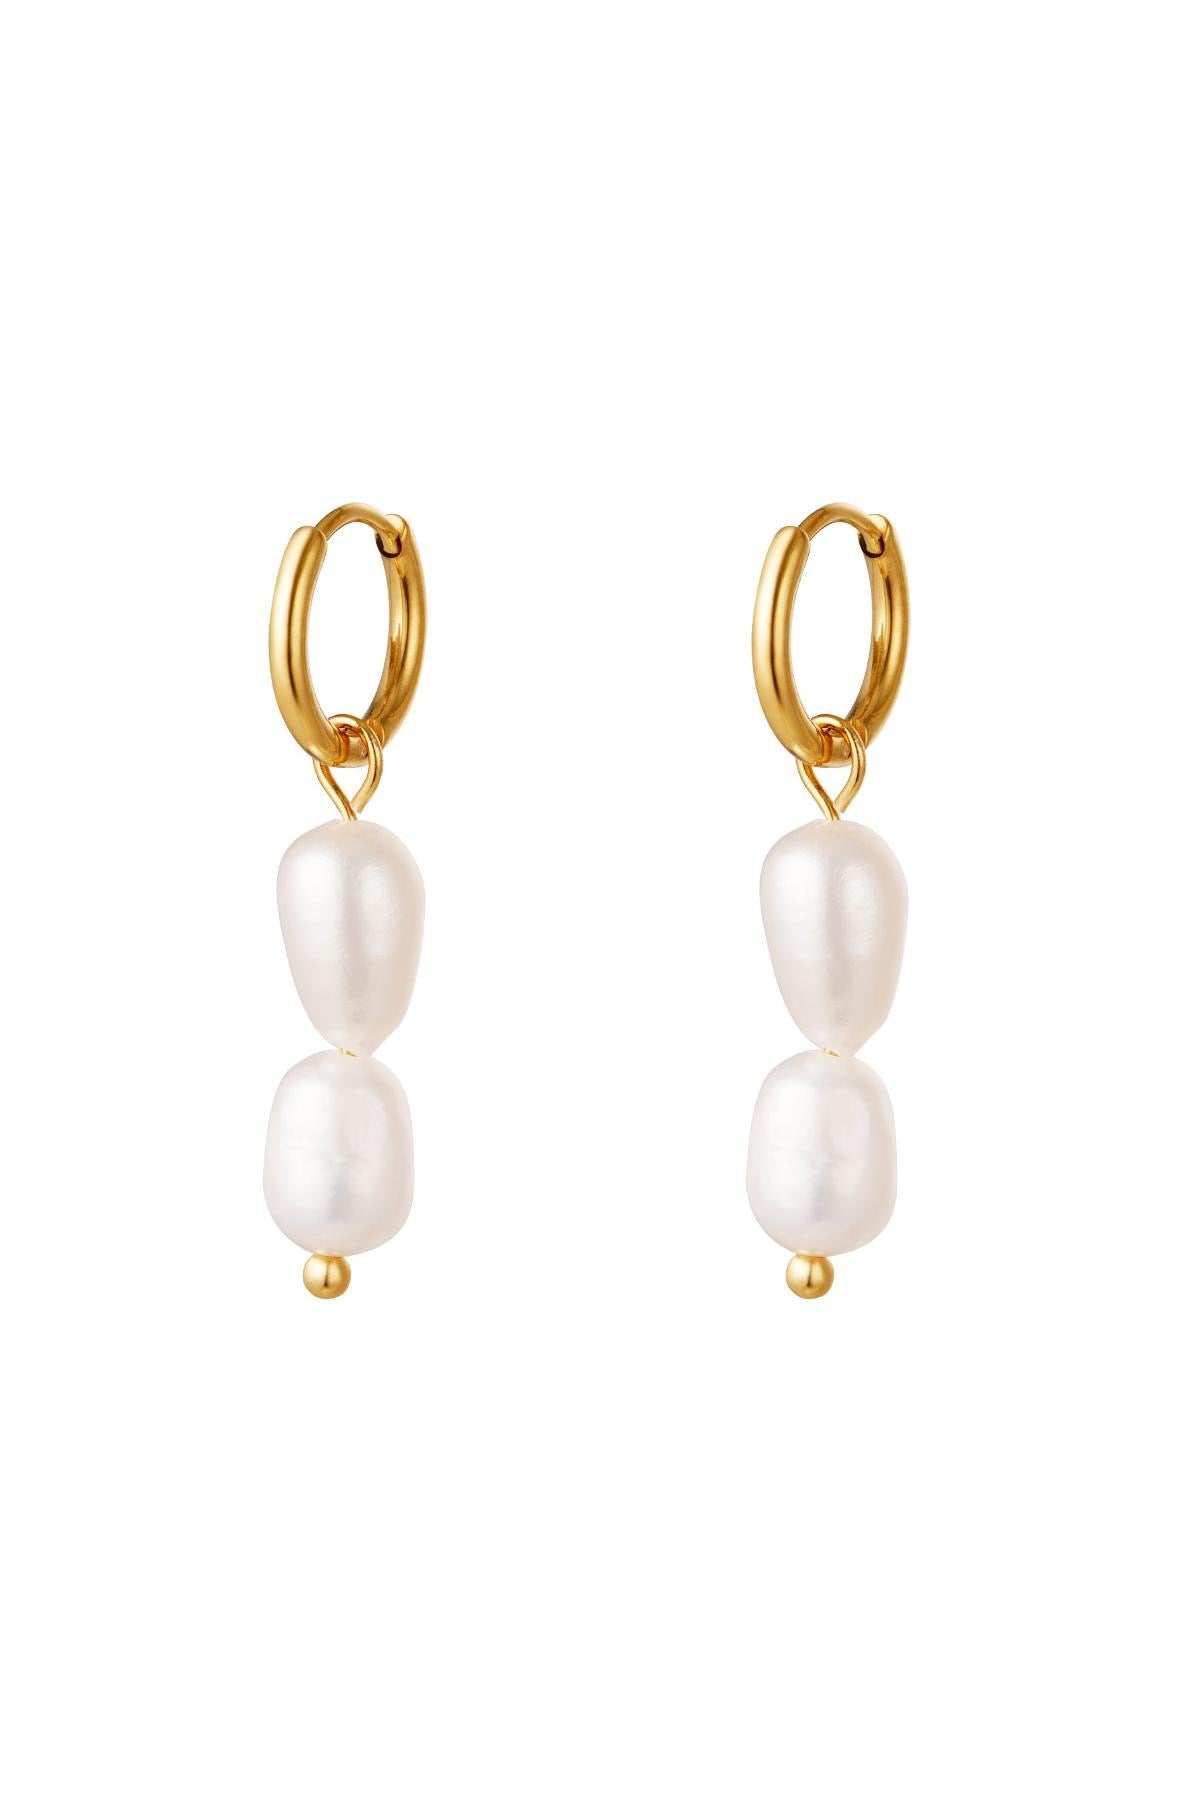 pearl earrings - gold